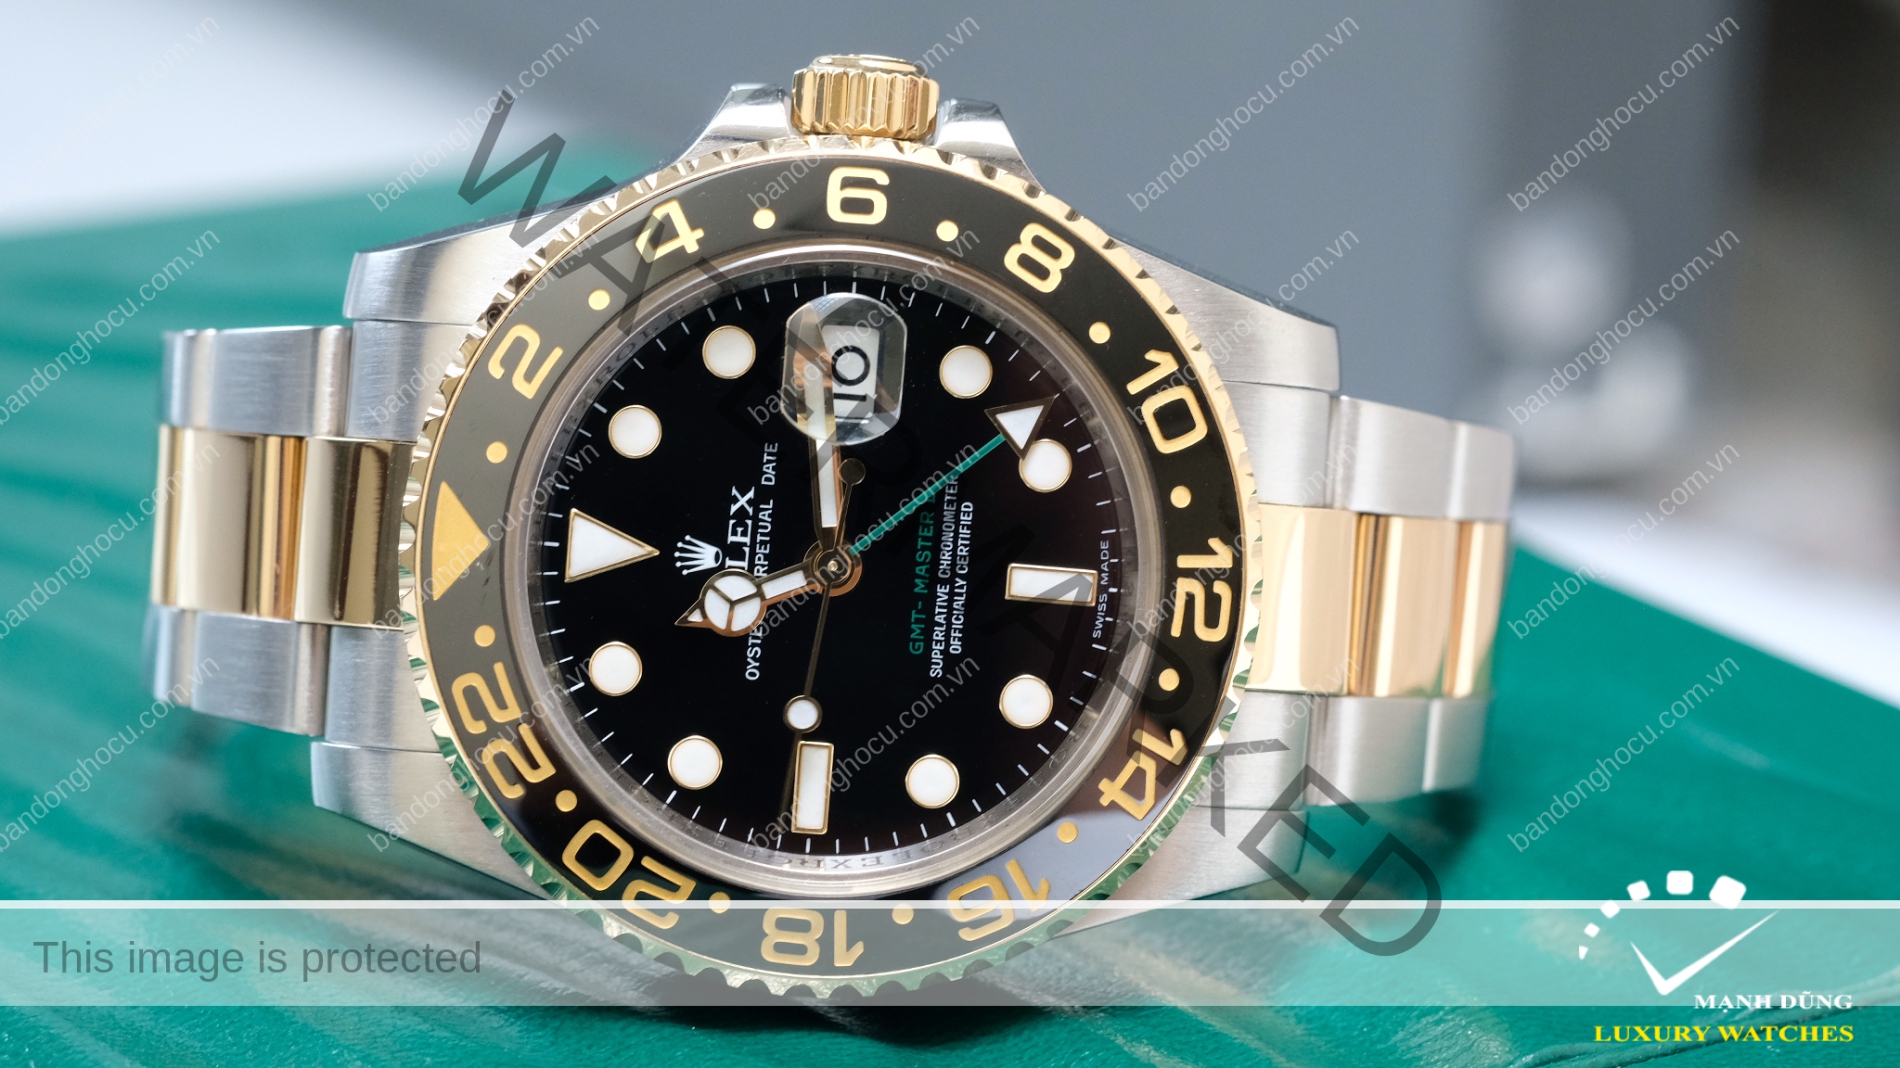 Đồng hồ Rolex GMT Master II 116713LN mặt đen size 40mm